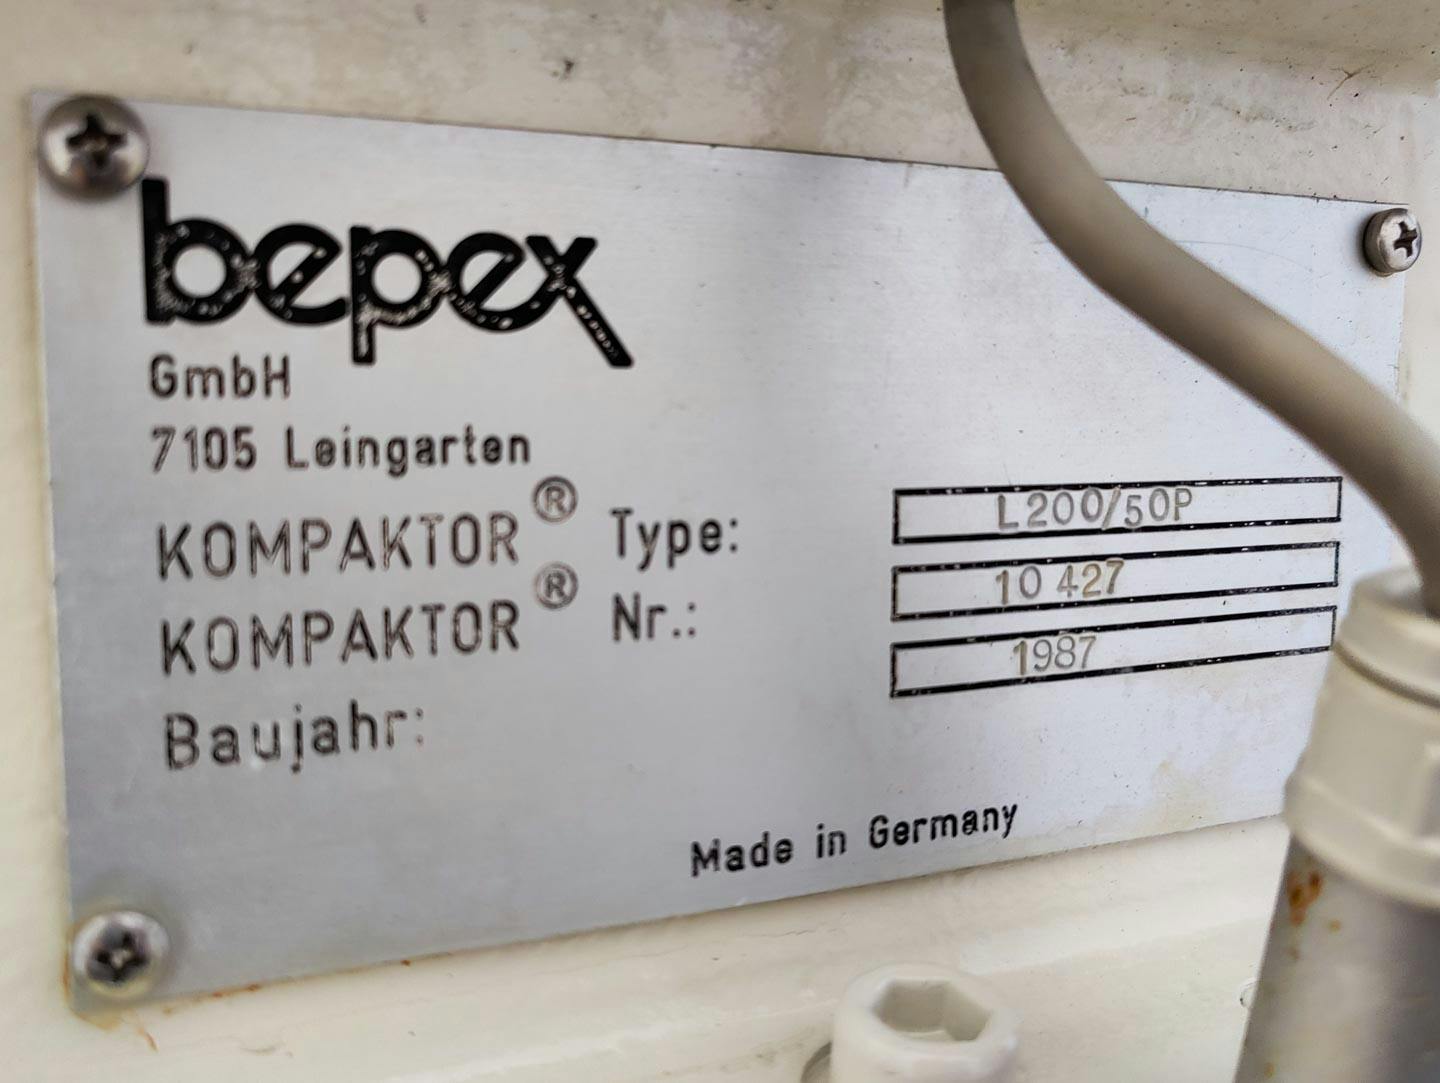 Bepex L-200/50P - Compactador de rolos - image 14